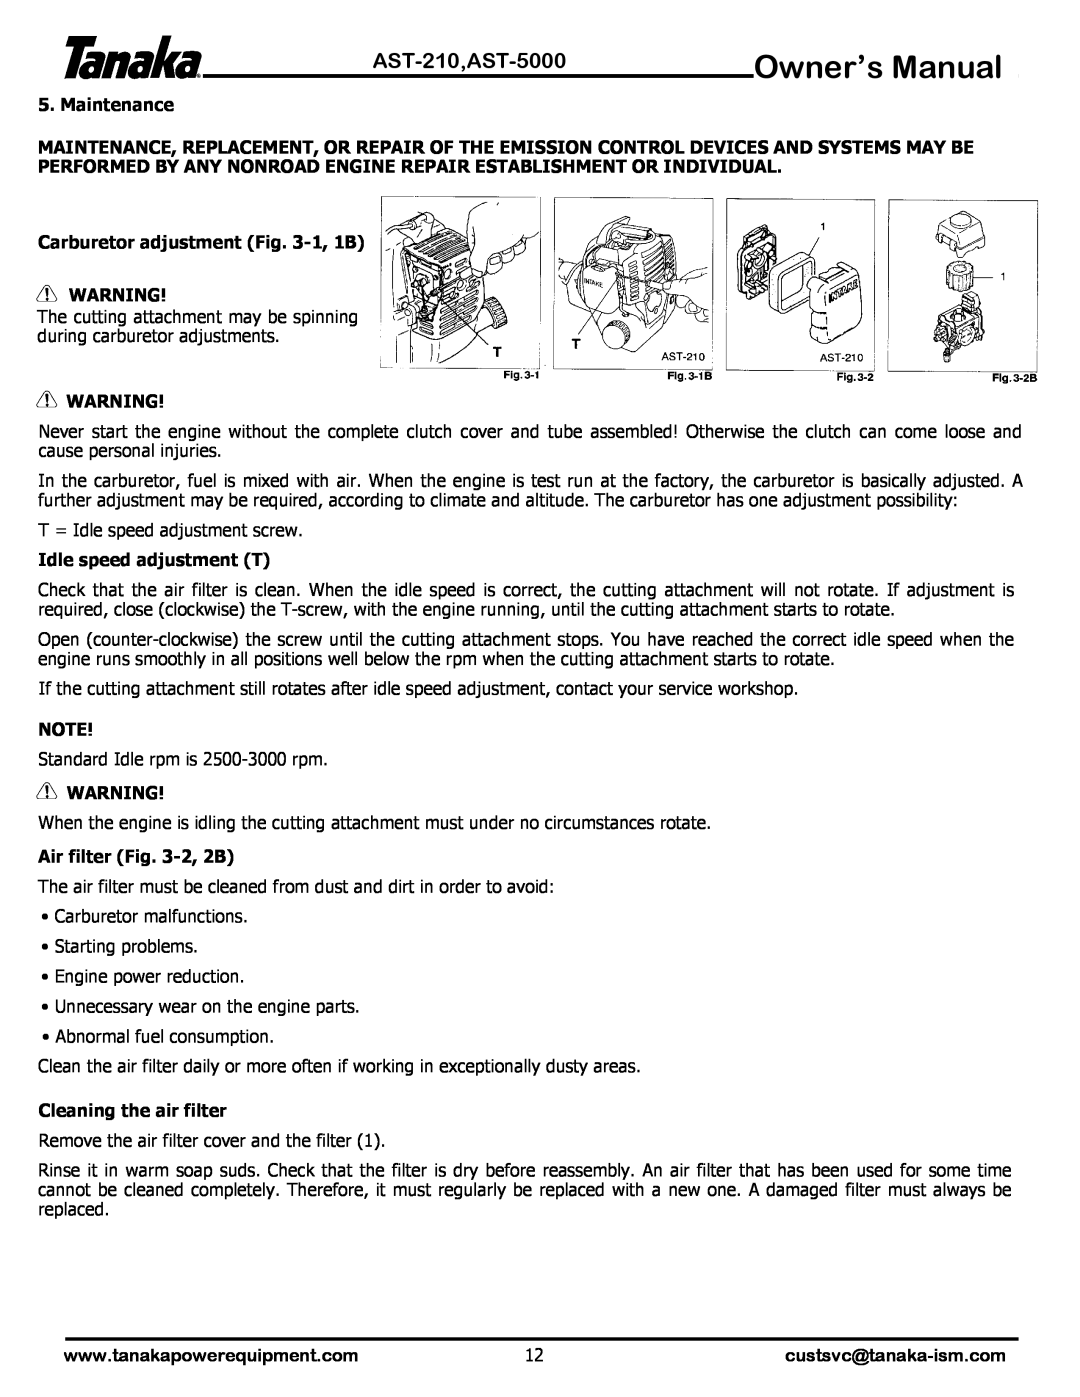 Tanaka manual Owner’s Manual, AST-210,AST-5000, Maintenance, Carburetor adjustment -1, 1B, Idle speed adjustment T 